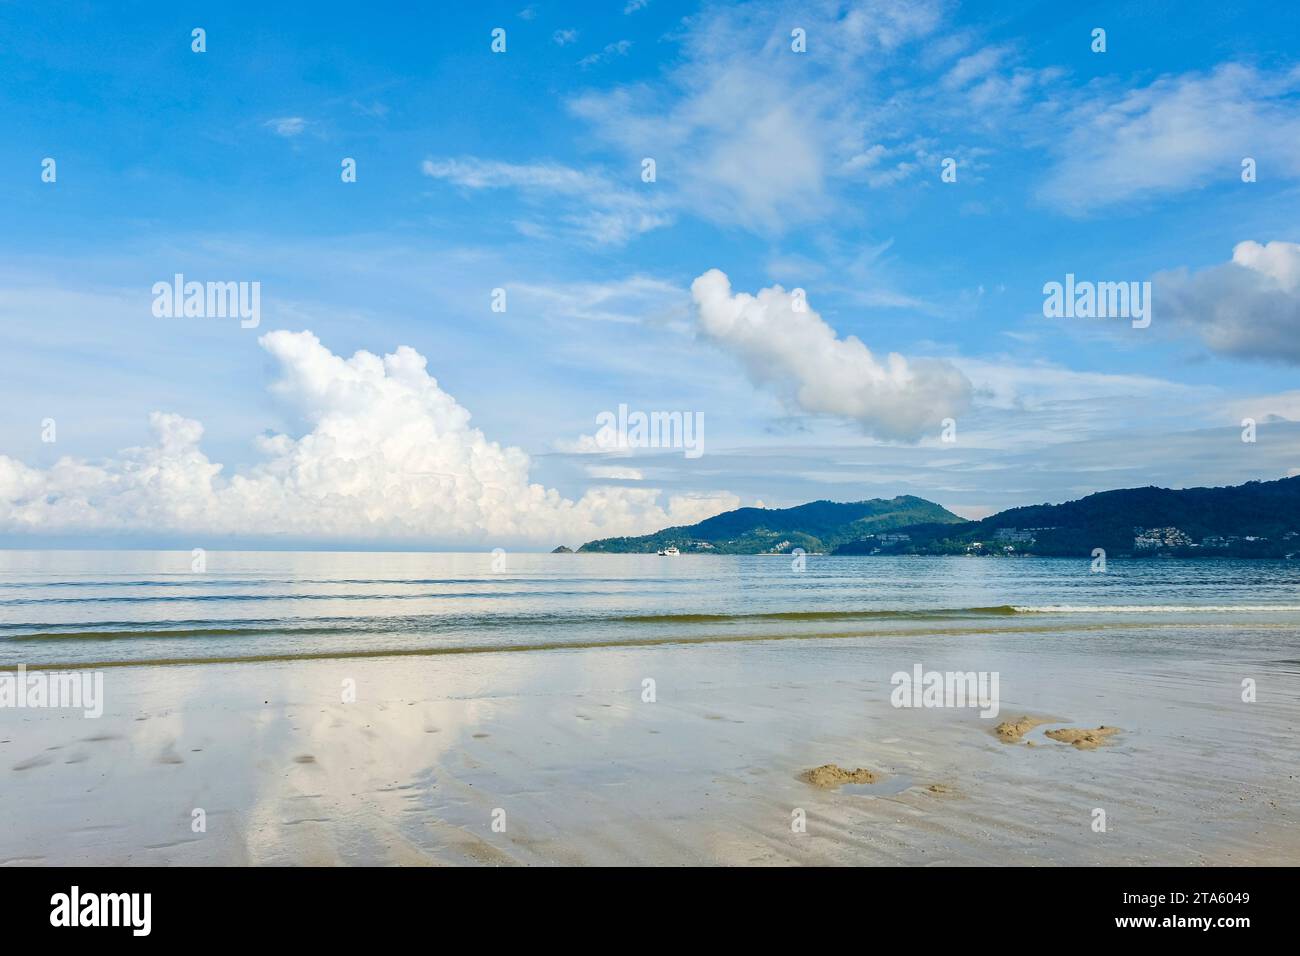 Una mattinata di sole a Patong Beach, con soffici nuvole bianche e cieli blu riflessi nelle acque limpide del Mare delle Andamane - Phuket, Thailandia Foto Stock